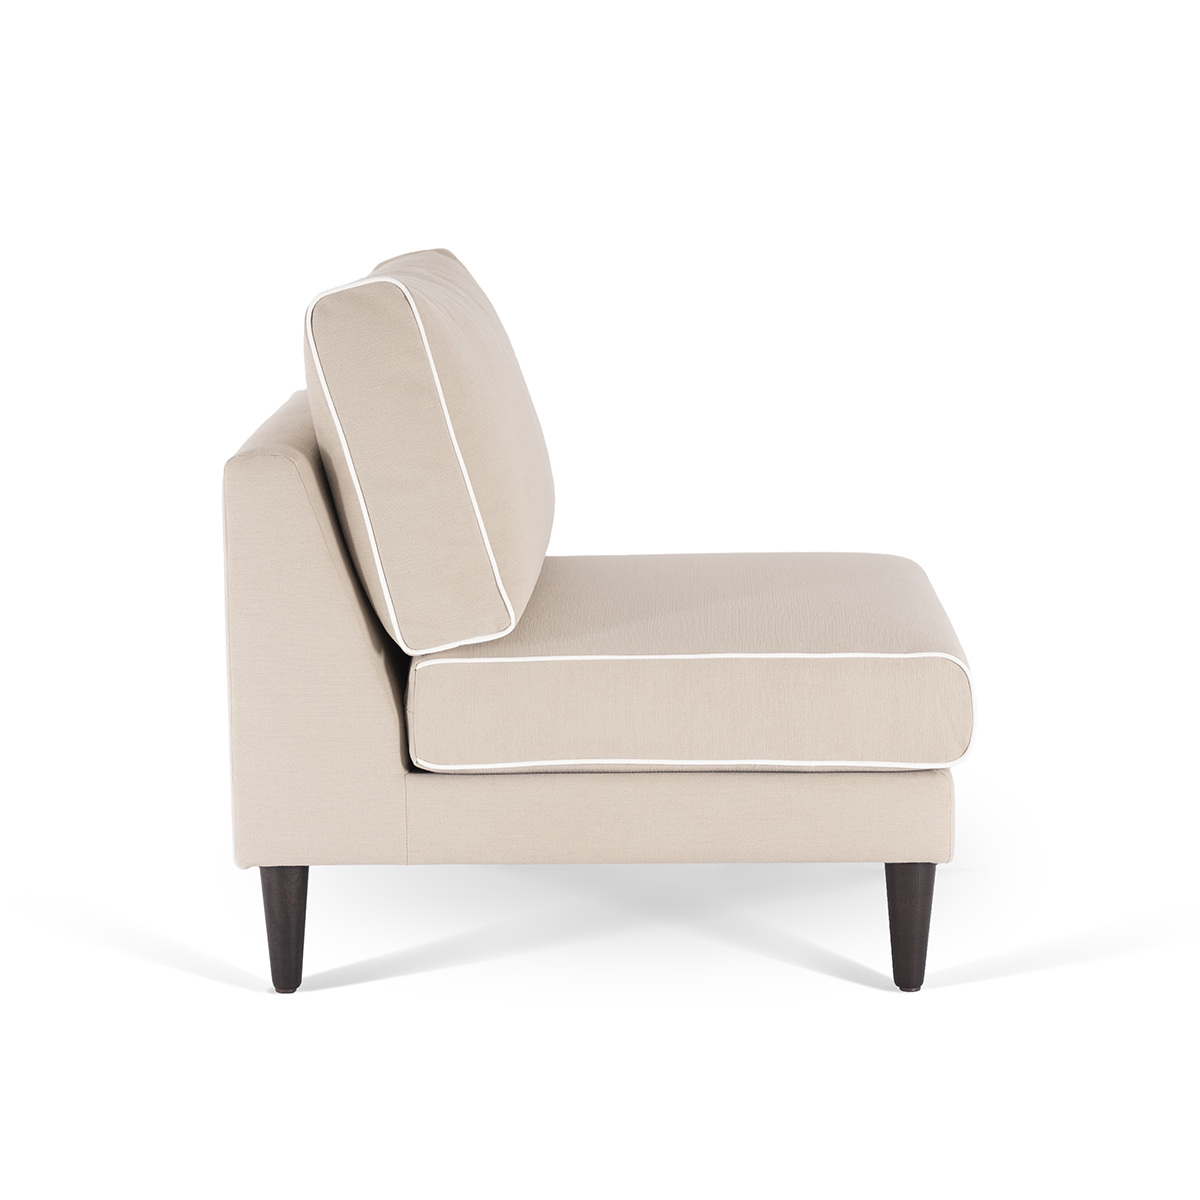 Flip Chair Noa, Beige / White - H80 x W80 x D75 cm - Cotton / Wood - image 3